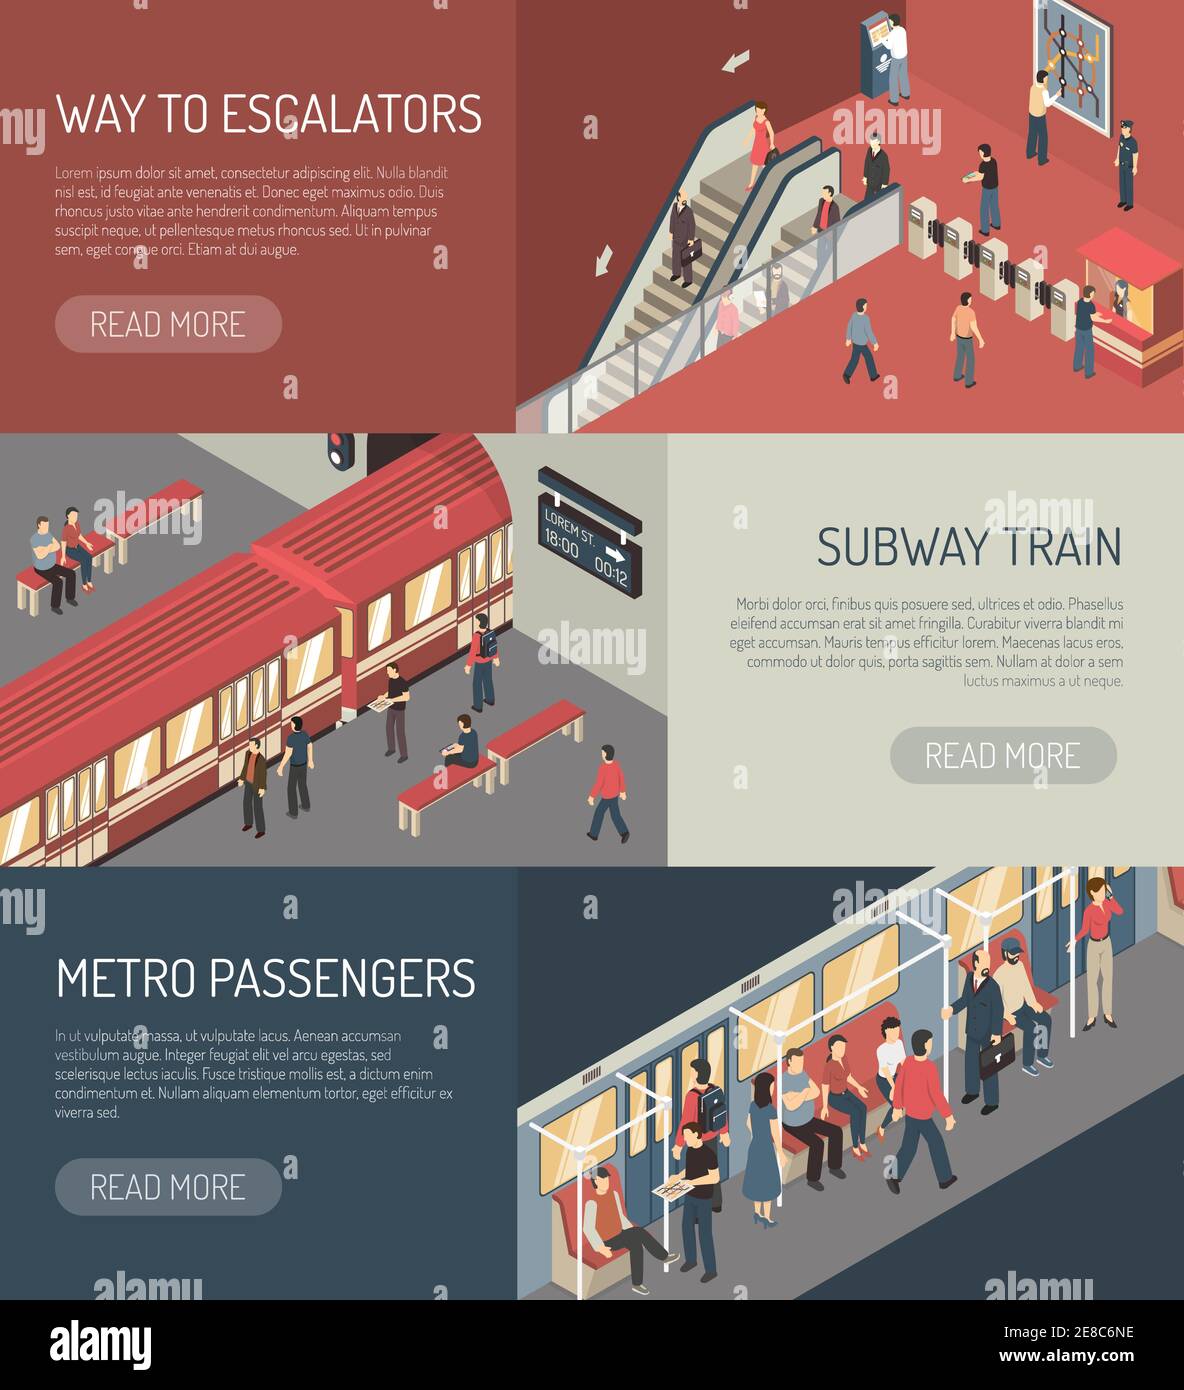 Rete metropolitana sotterranea 3 banner isometrici design con illustrazione vettoriale isolata dei passeggeri della metropolitana sulla scala mobile Illustrazione Vettoriale